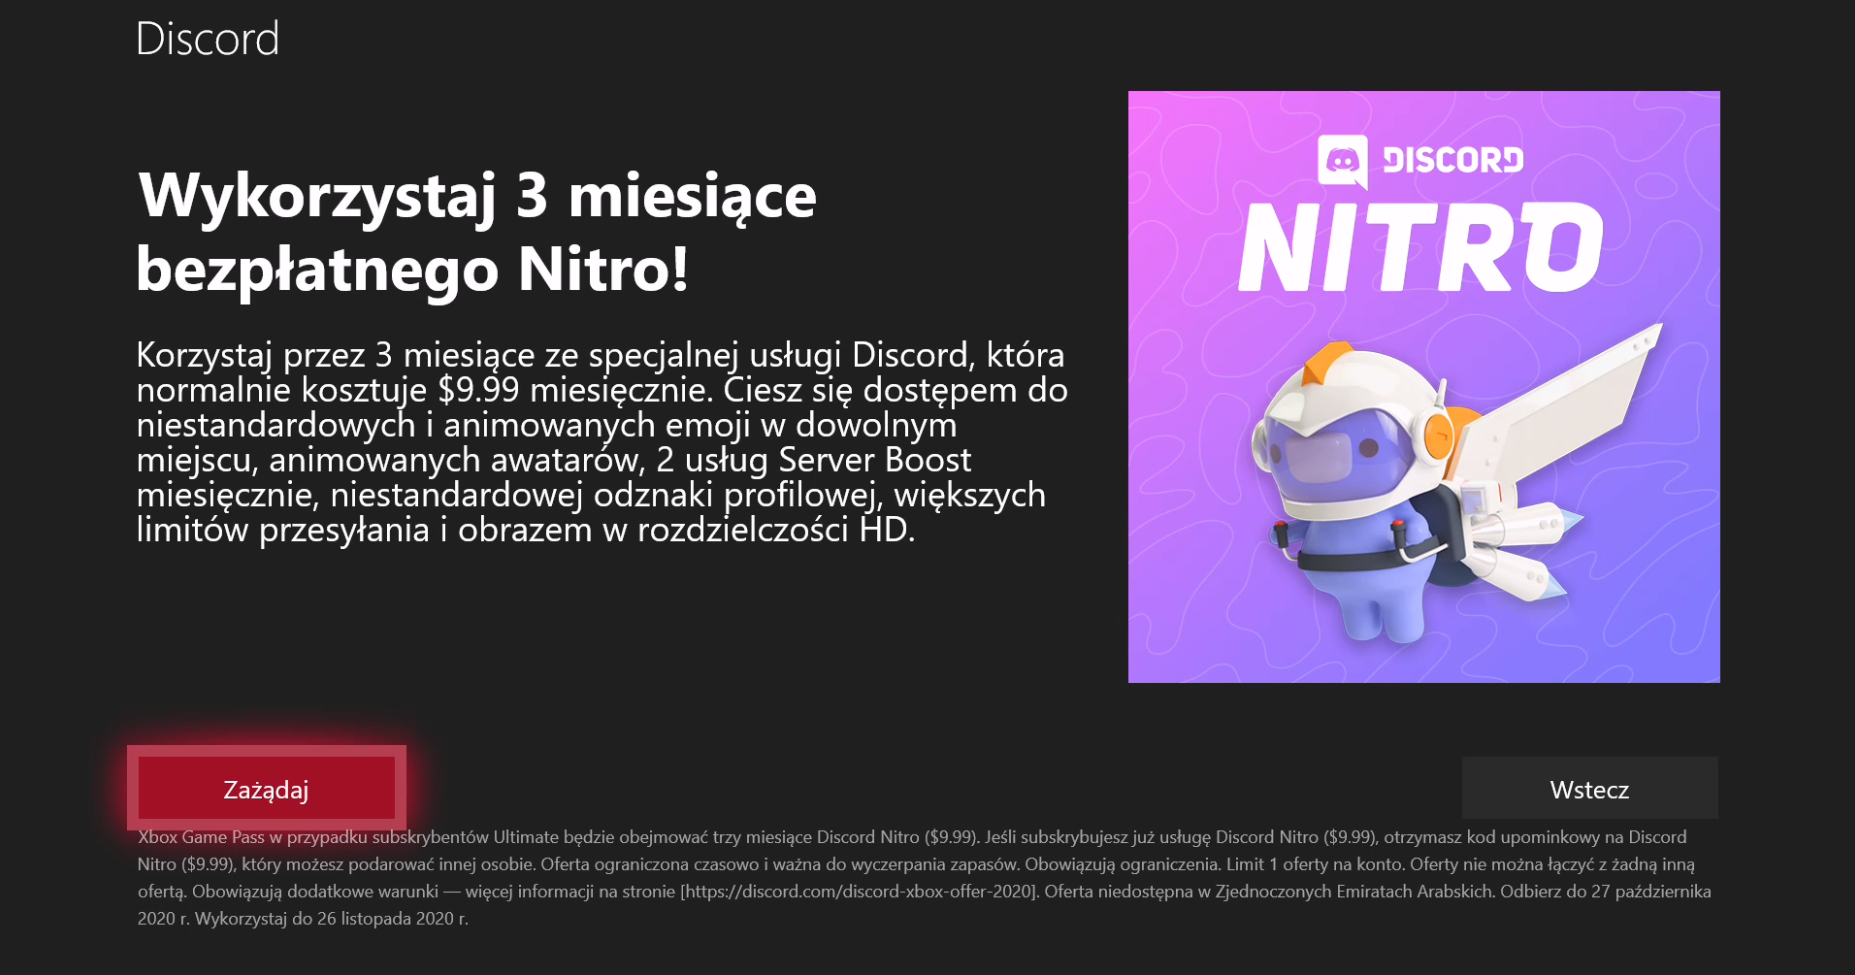 discord nitro with xbox game pass